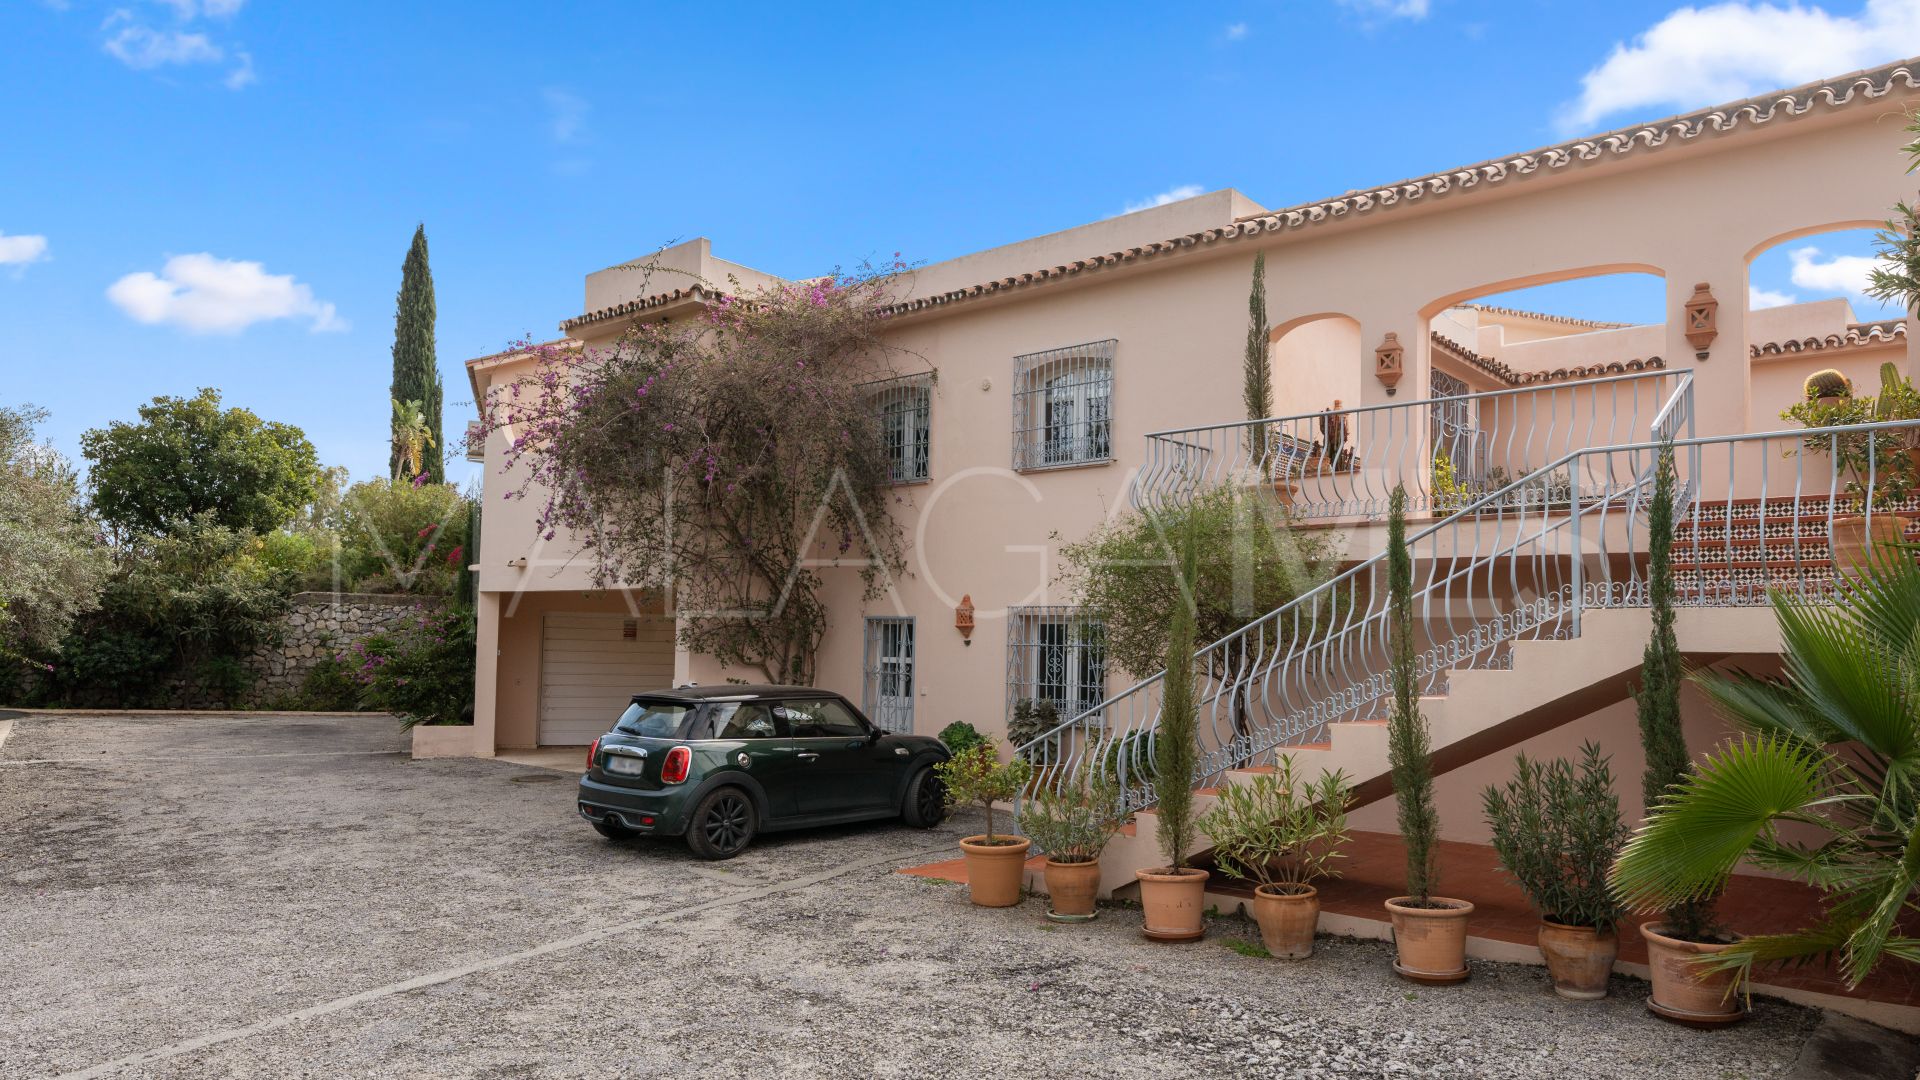 For sale villa in Fuente del Espanto with 4 bedrooms